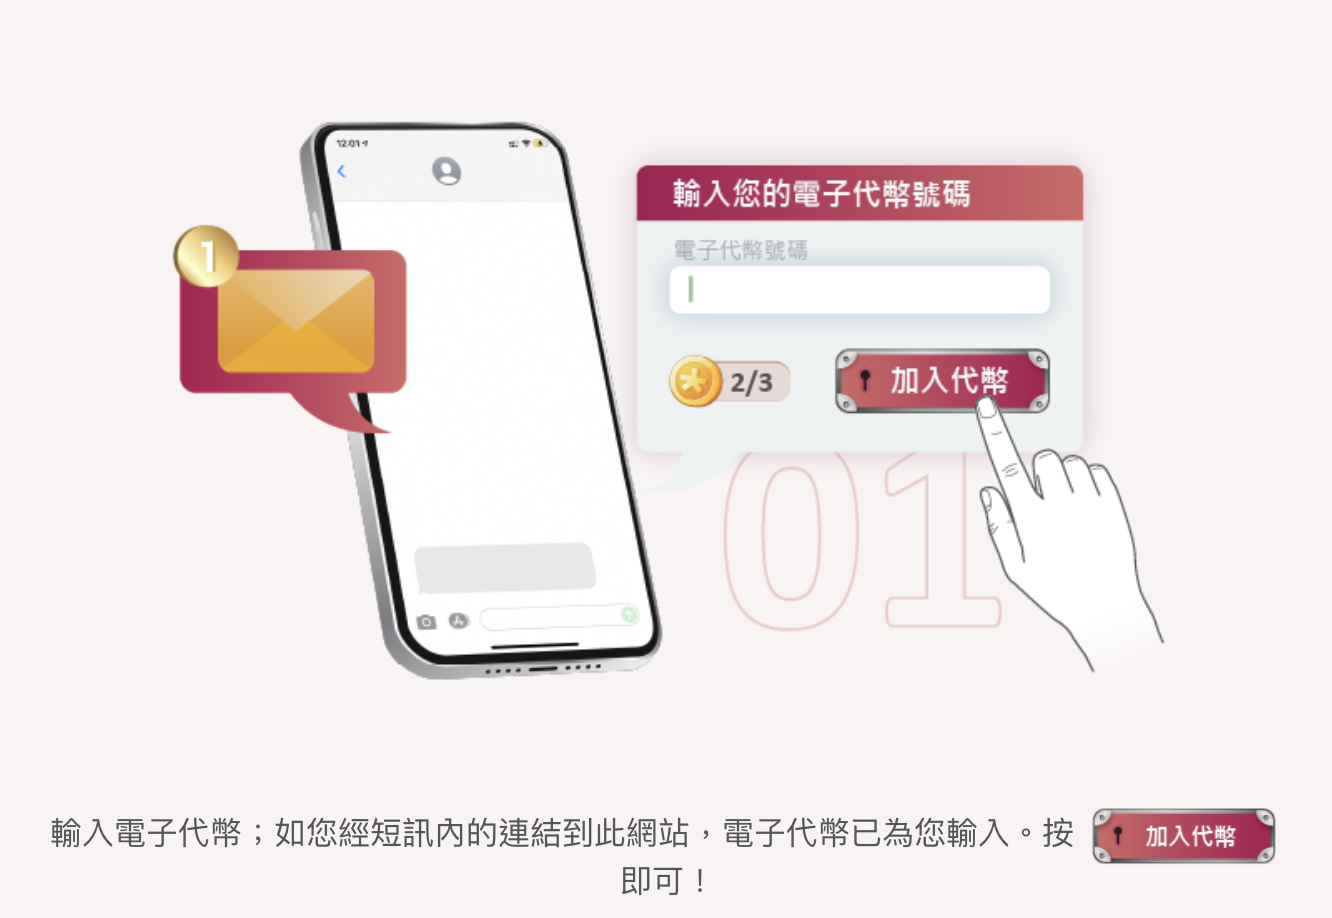 【大新「人人大賞頭 一 藏寶箱」遊戲】線上夾公仔機！簽賬或電子錢包增值HK$500就有得玩！